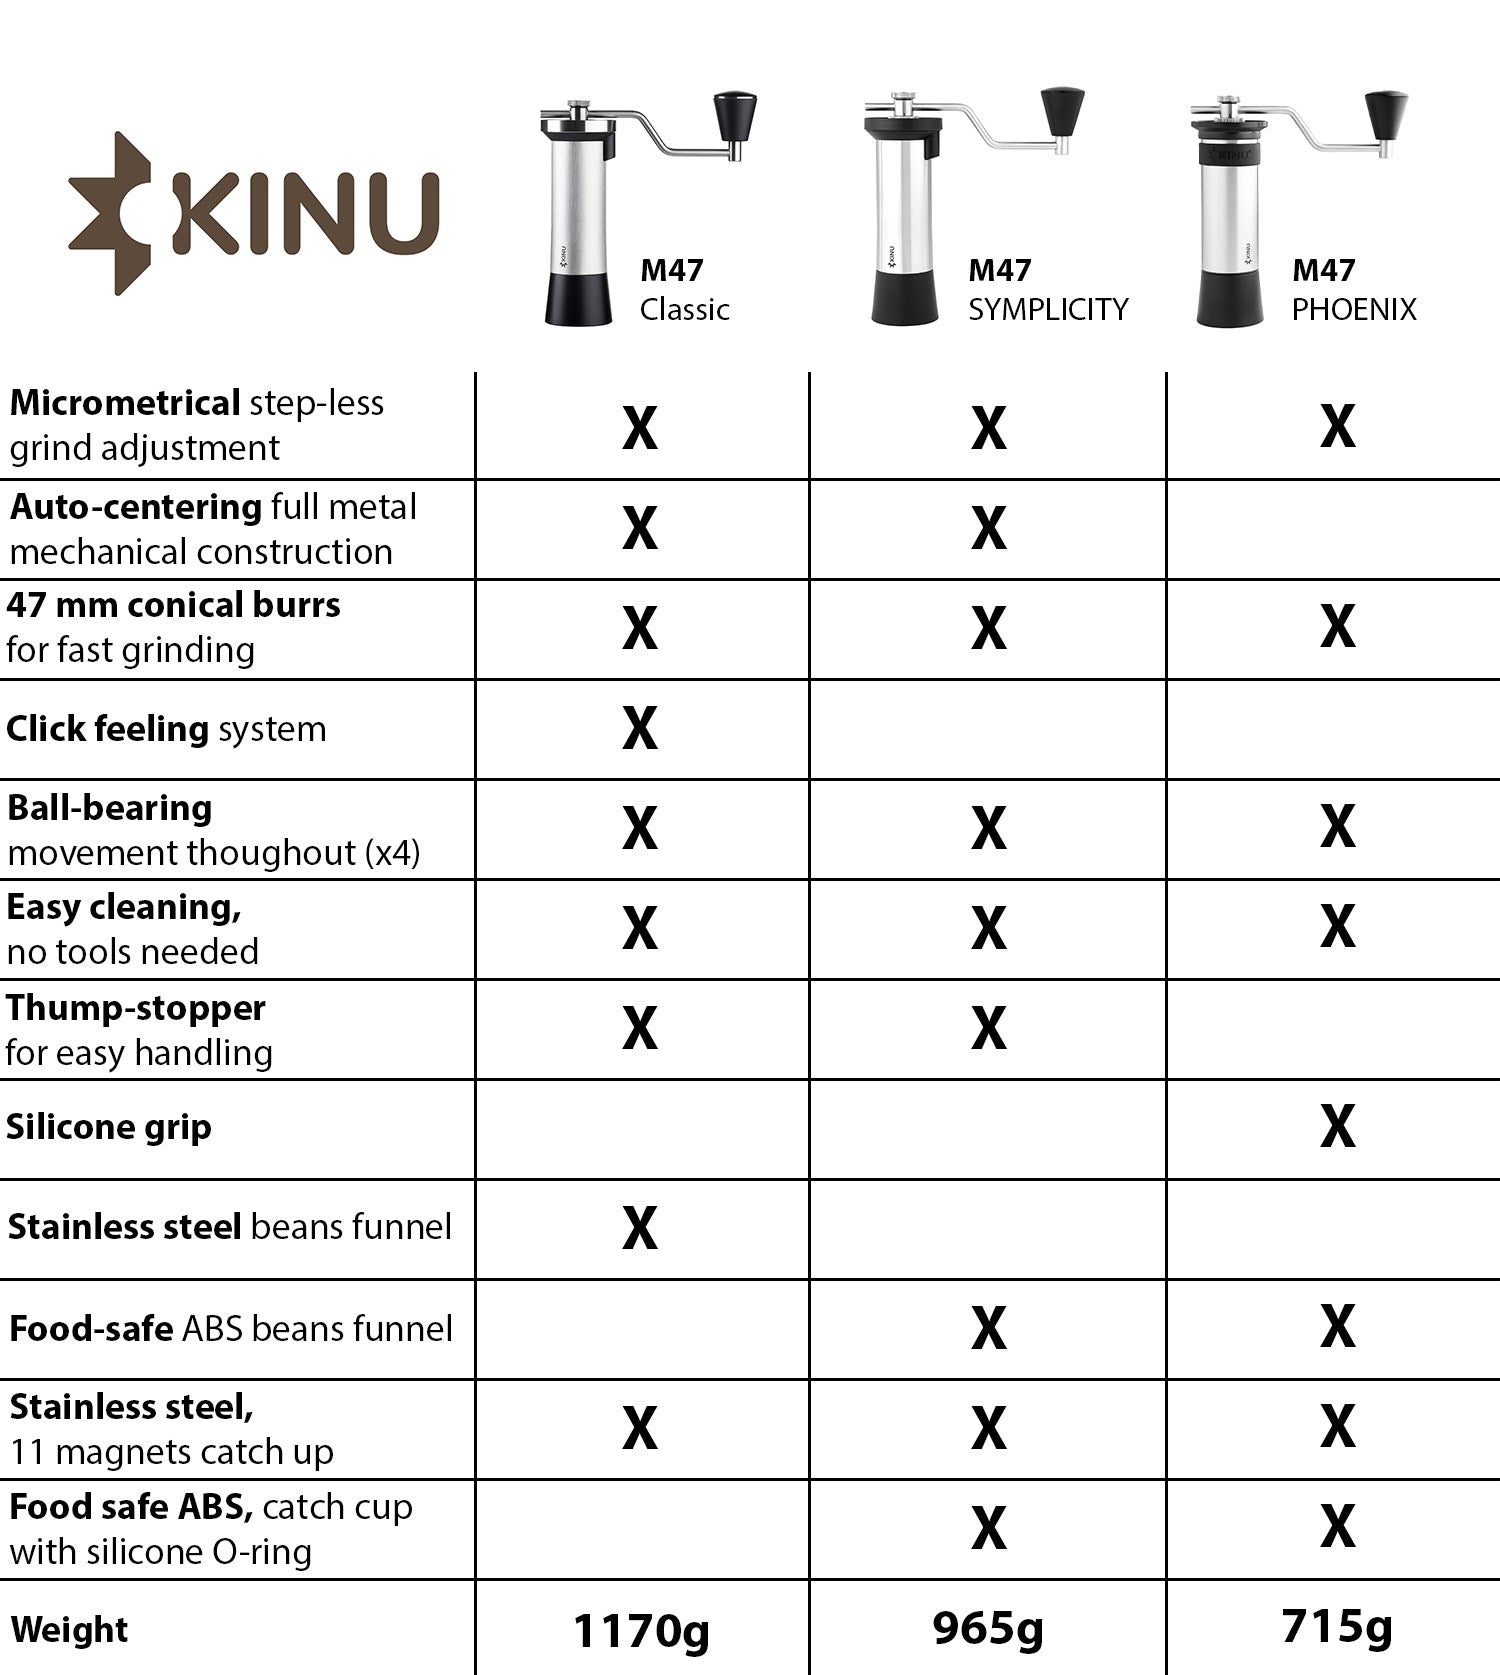 Vergleichstabelle für die Kinu grinder